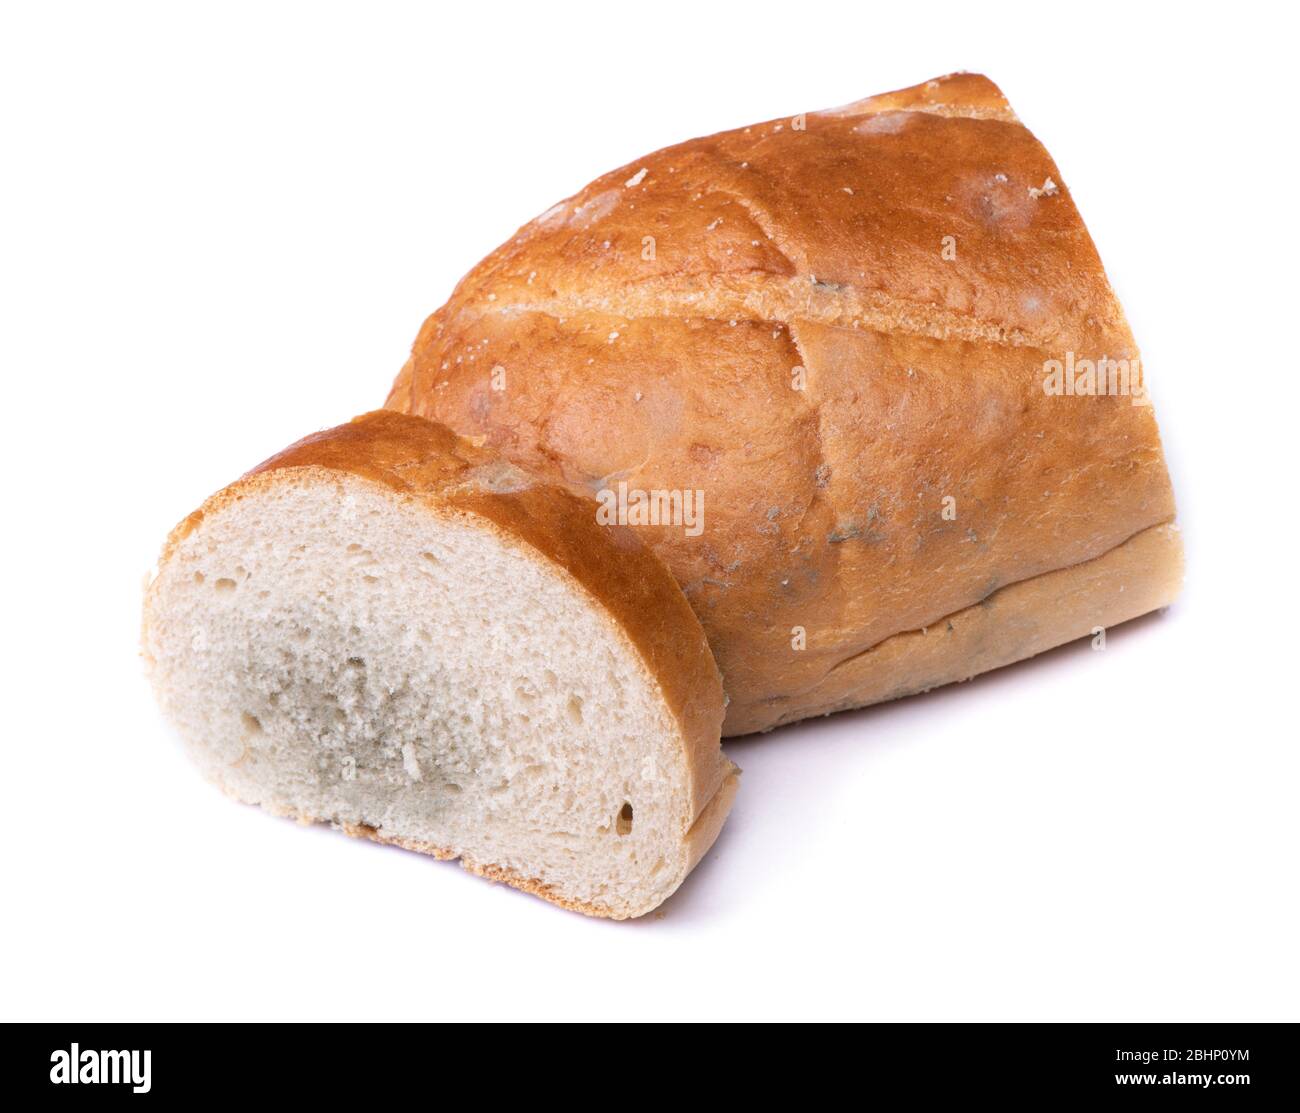 Morceau de pain moddy isolé sur fond blanc Banque D'Images